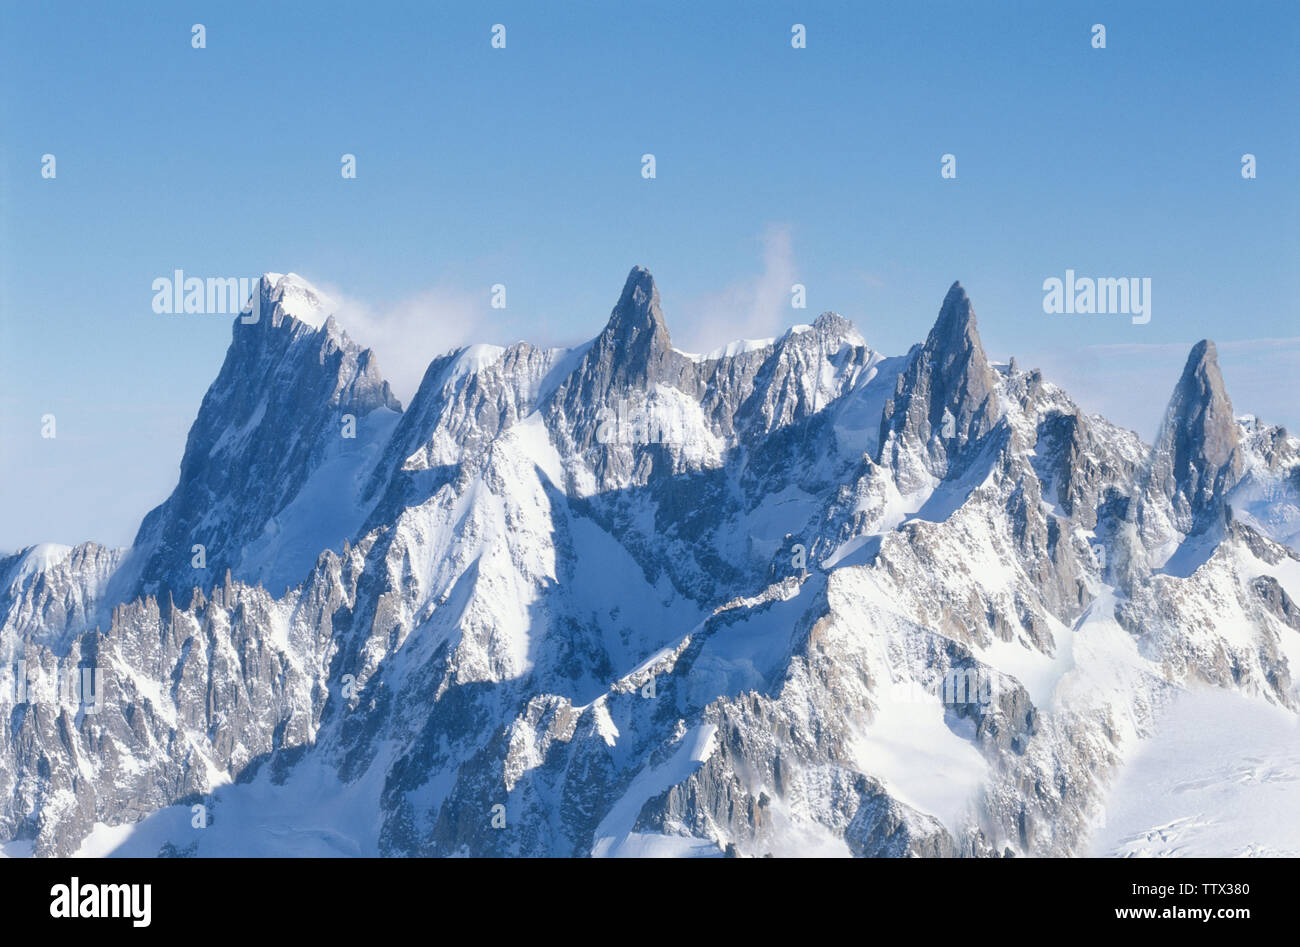 Vue panoramique sur la chaîne de montagnes enneigée Banque D'Images